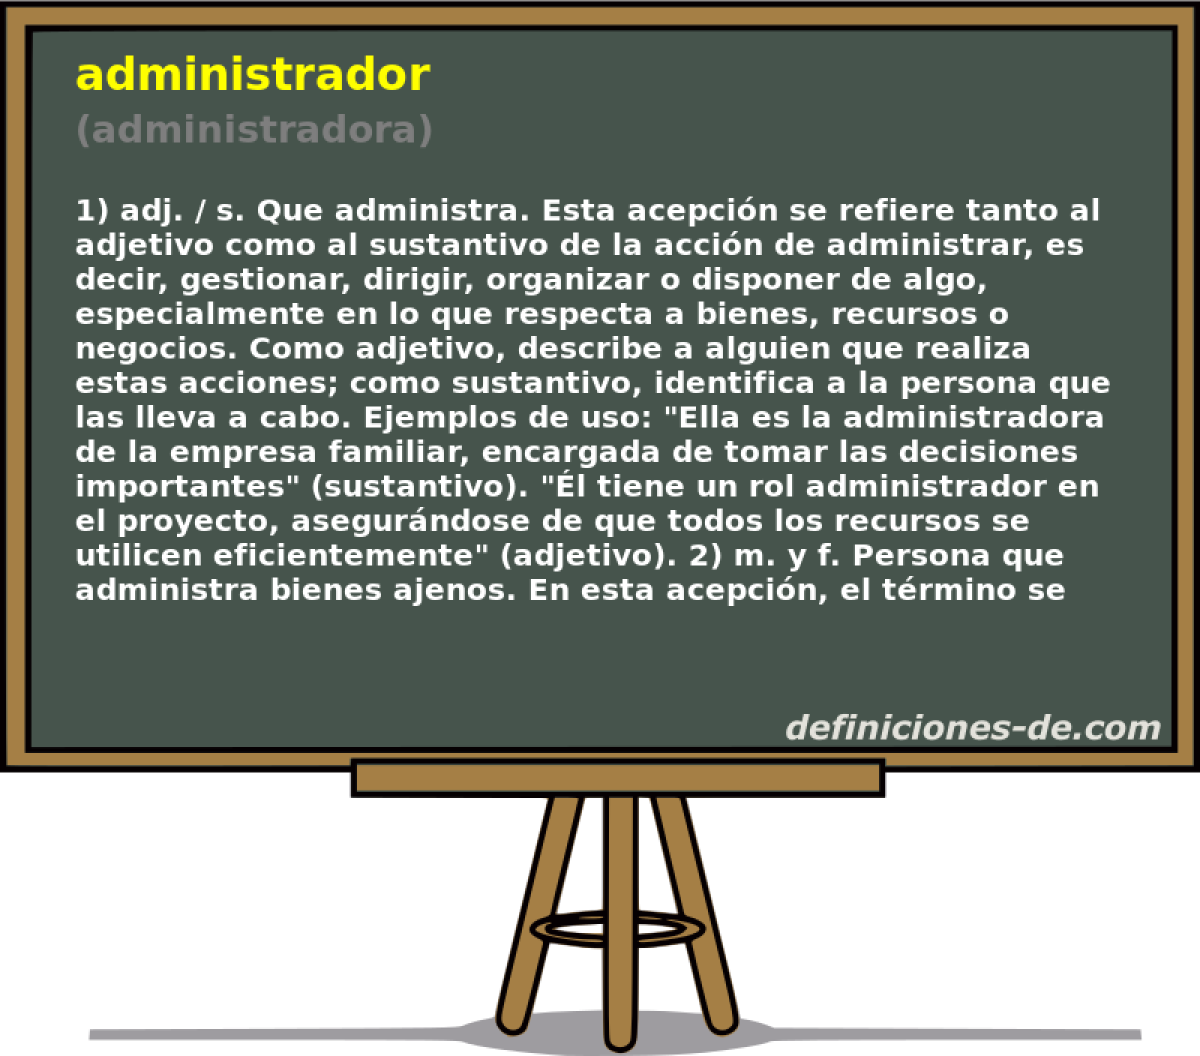 administrador (administradora)